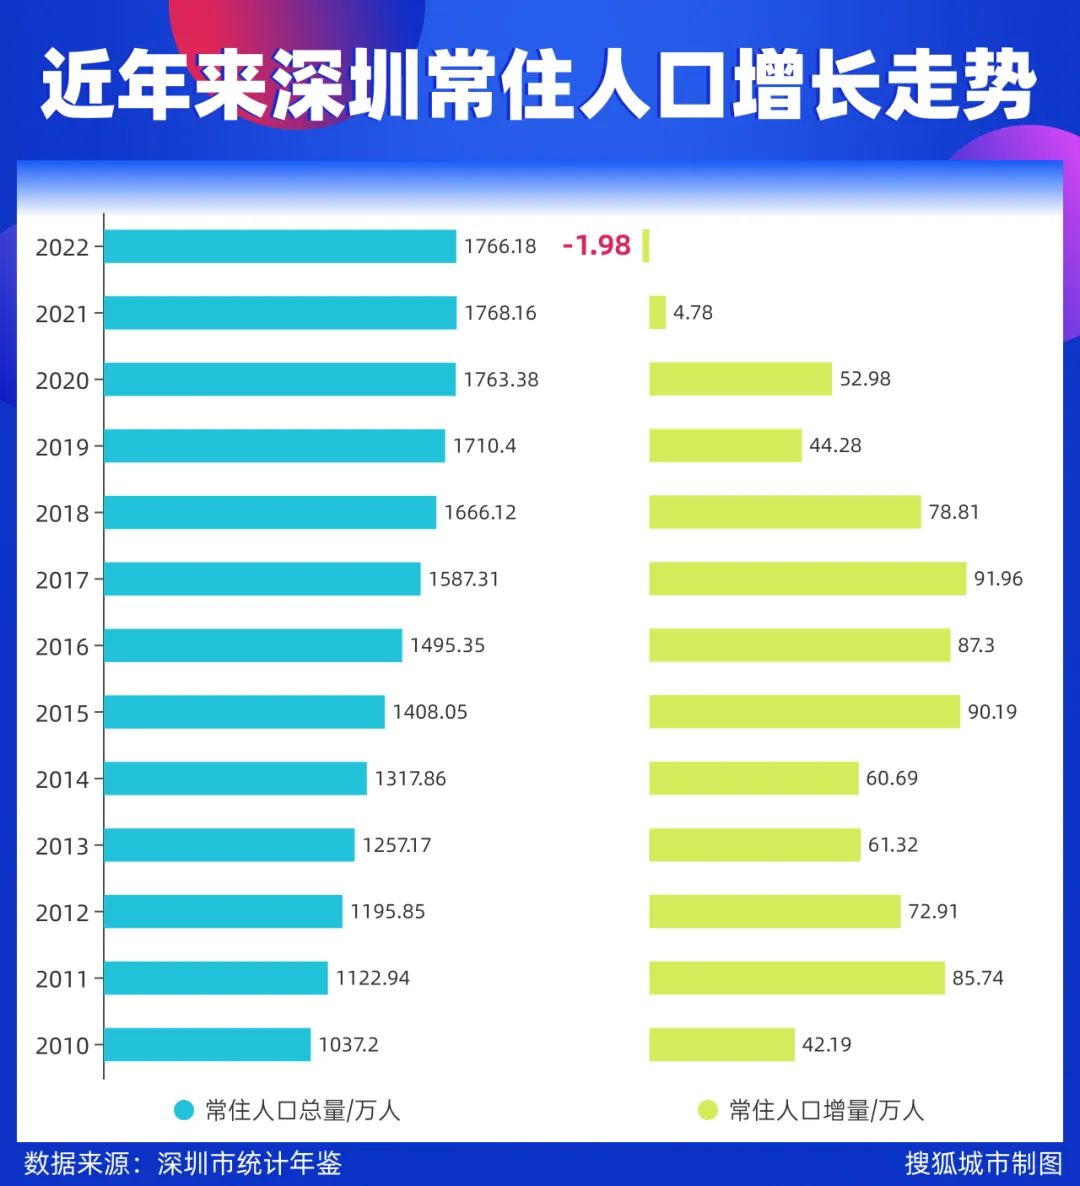 深圳1979年立市以来常住人口首次负增长